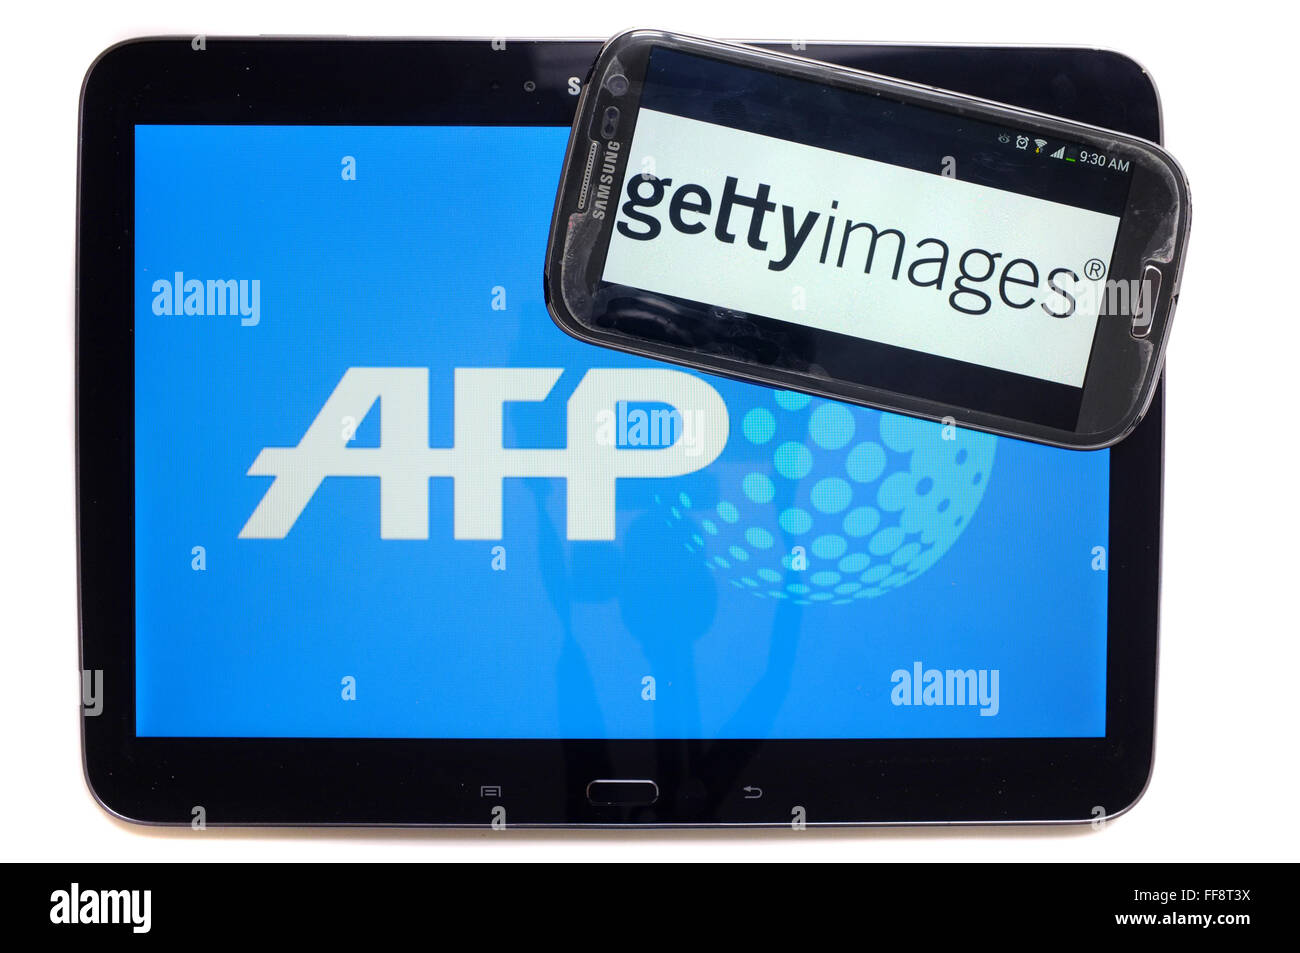 Les agences de presse AFP et getty images sur l'écran d'une tablette et un smartphone photographié sur un fond blanc. Banque D'Images